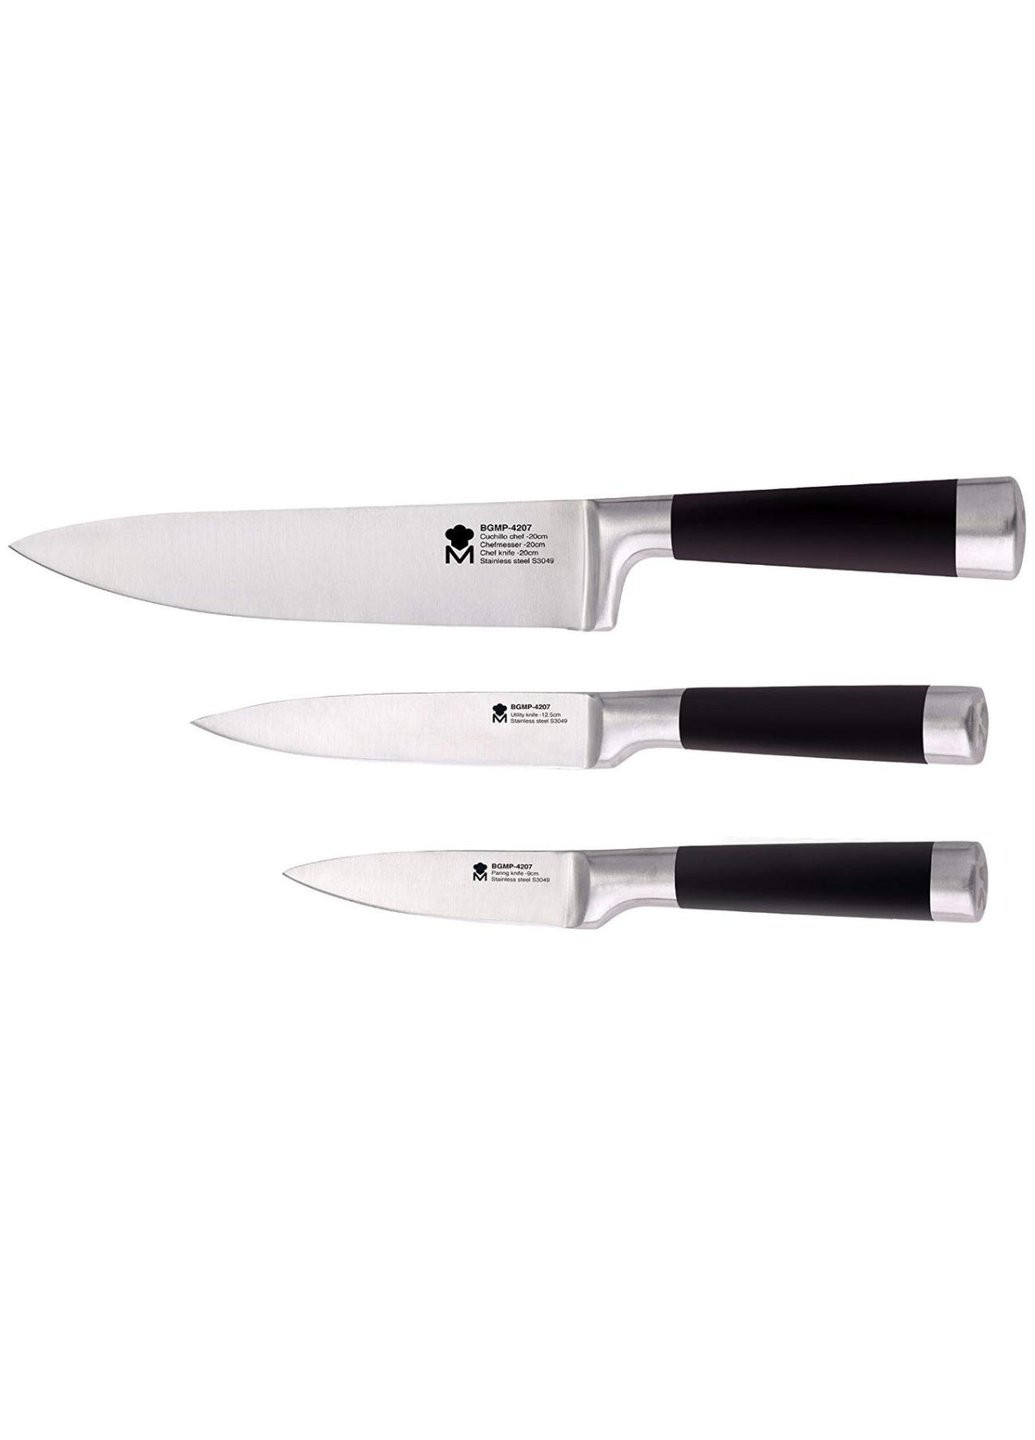 Набор кухонных ножей 3 пр Masterpro Foodies BGMP-4207 Bergner комбинированные,